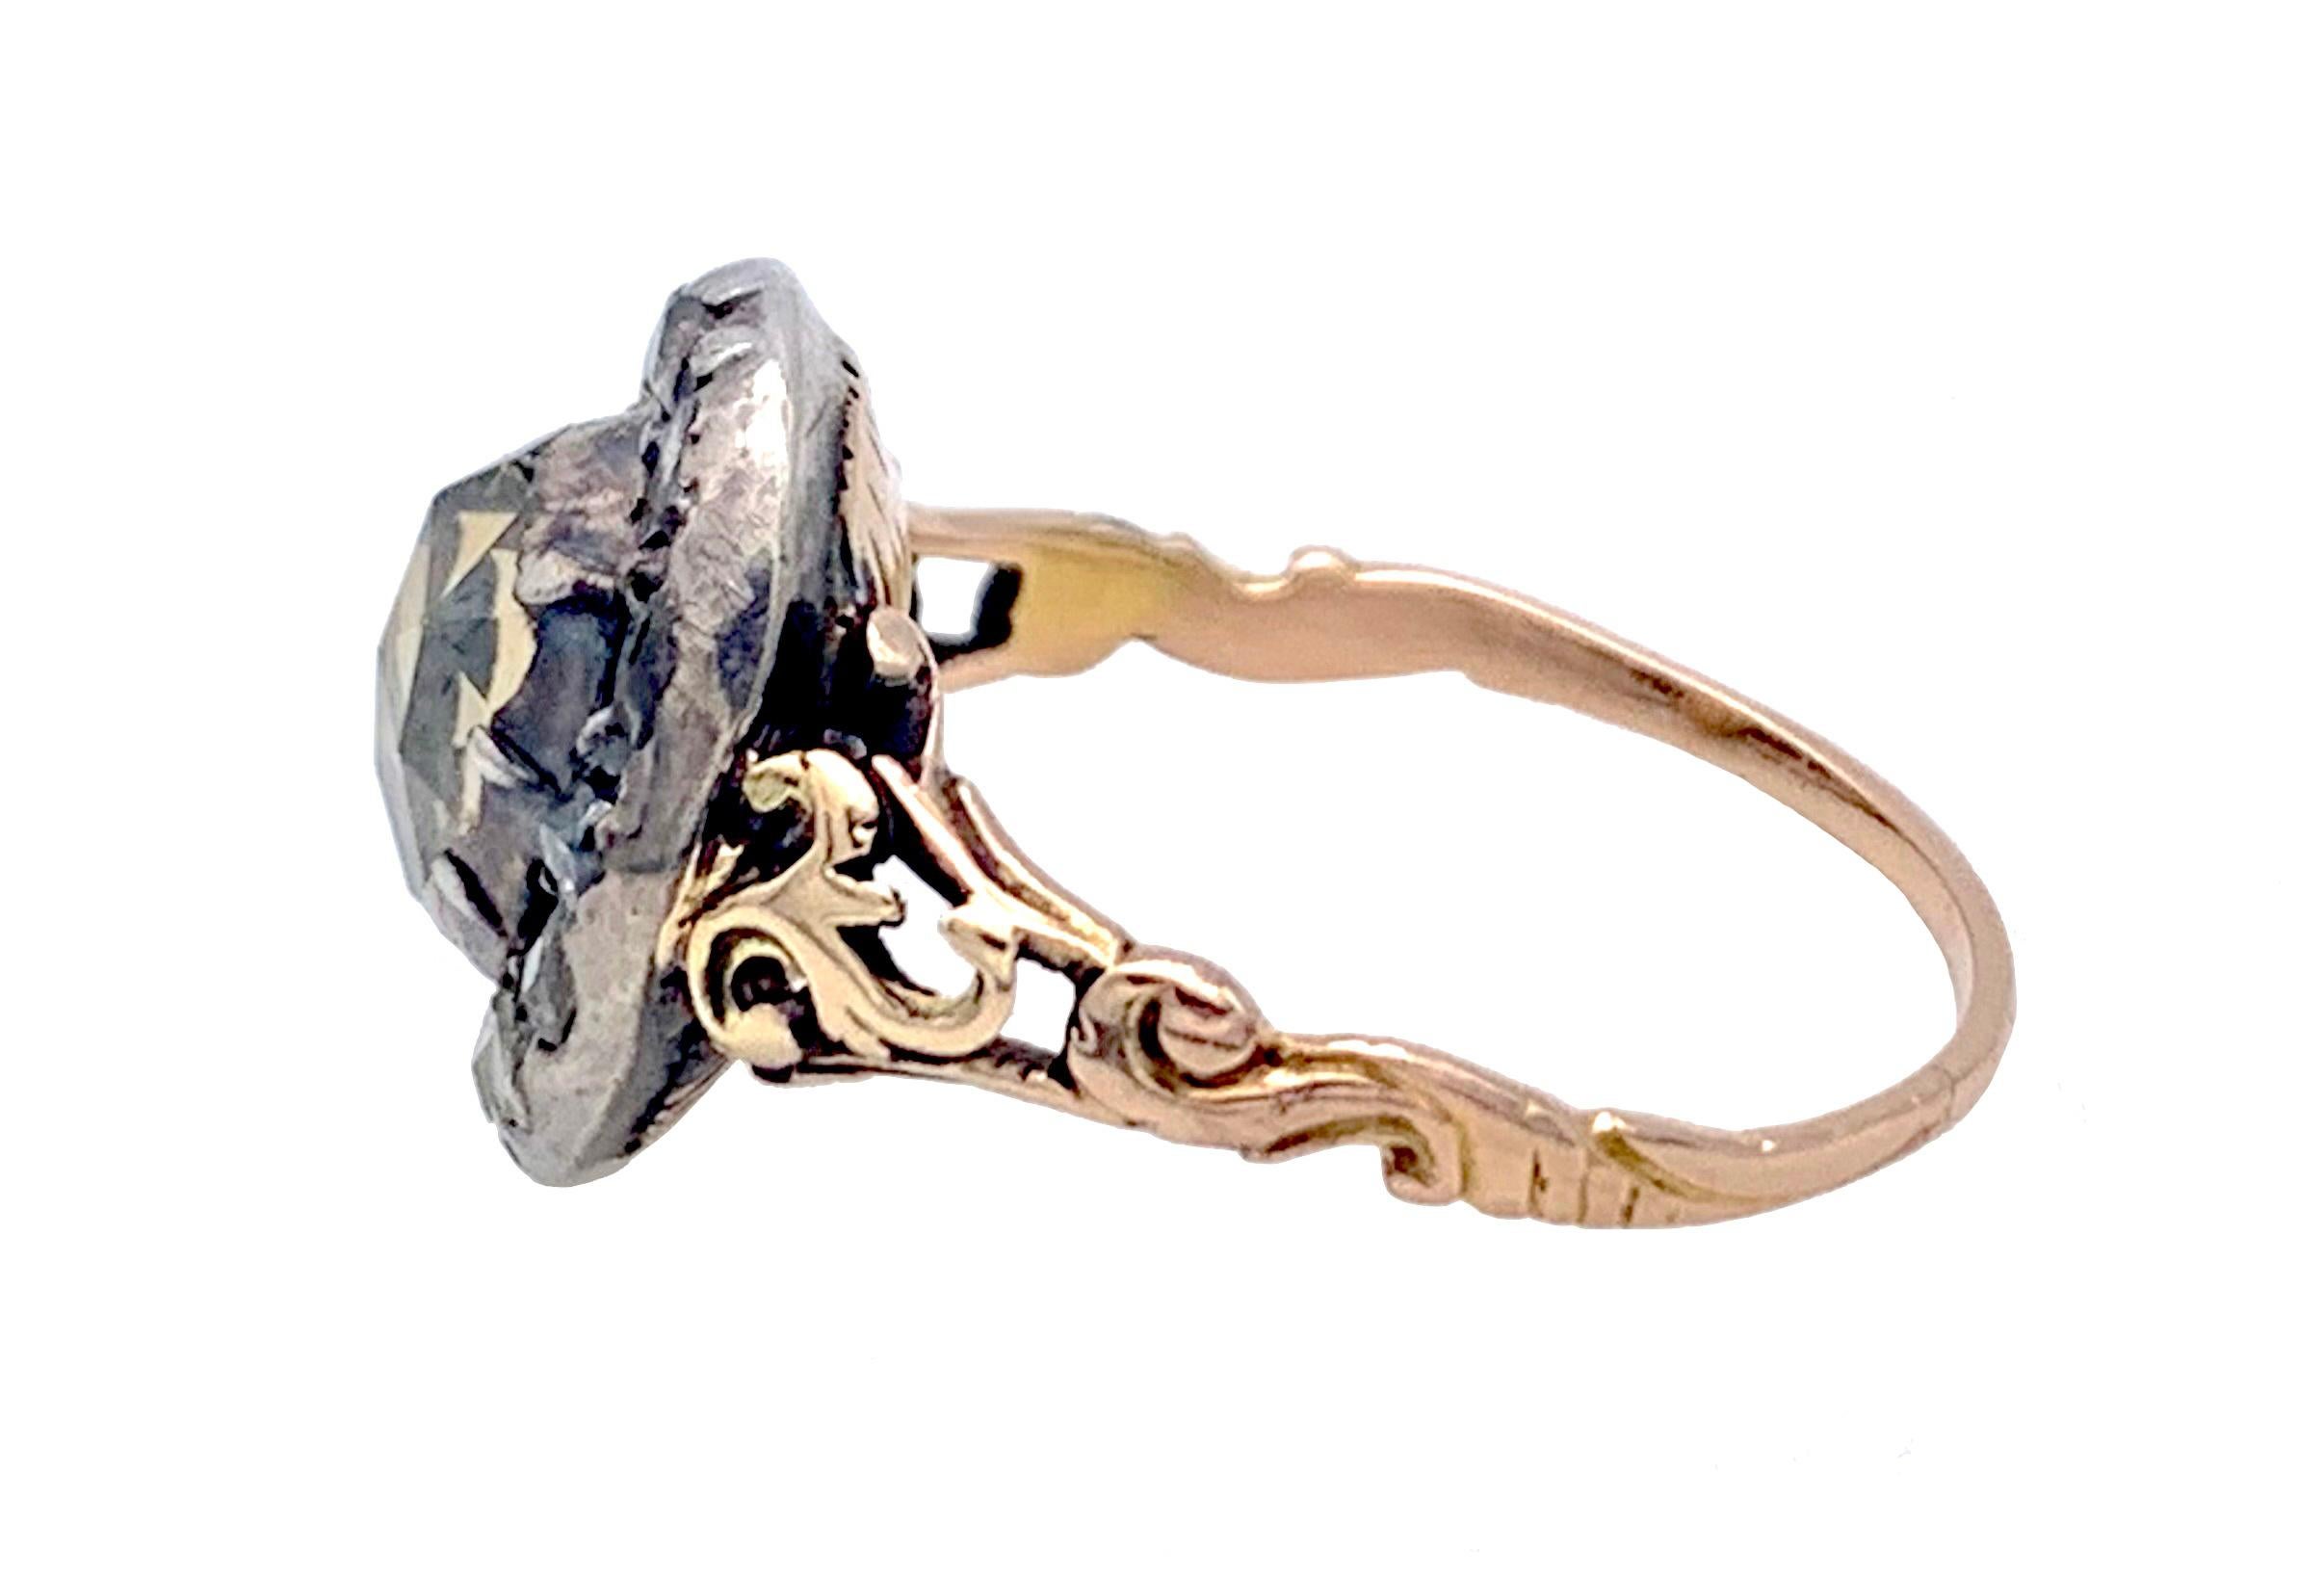 Este raro e inusual anillo del siglo XVIII está diseñado como un corazón estilizado y fue creado en 1760 ca. Un diamante marrón natural en forma de corazón está montado en un engaste cerrado de plata. El diamante marrón está rodeado por doce